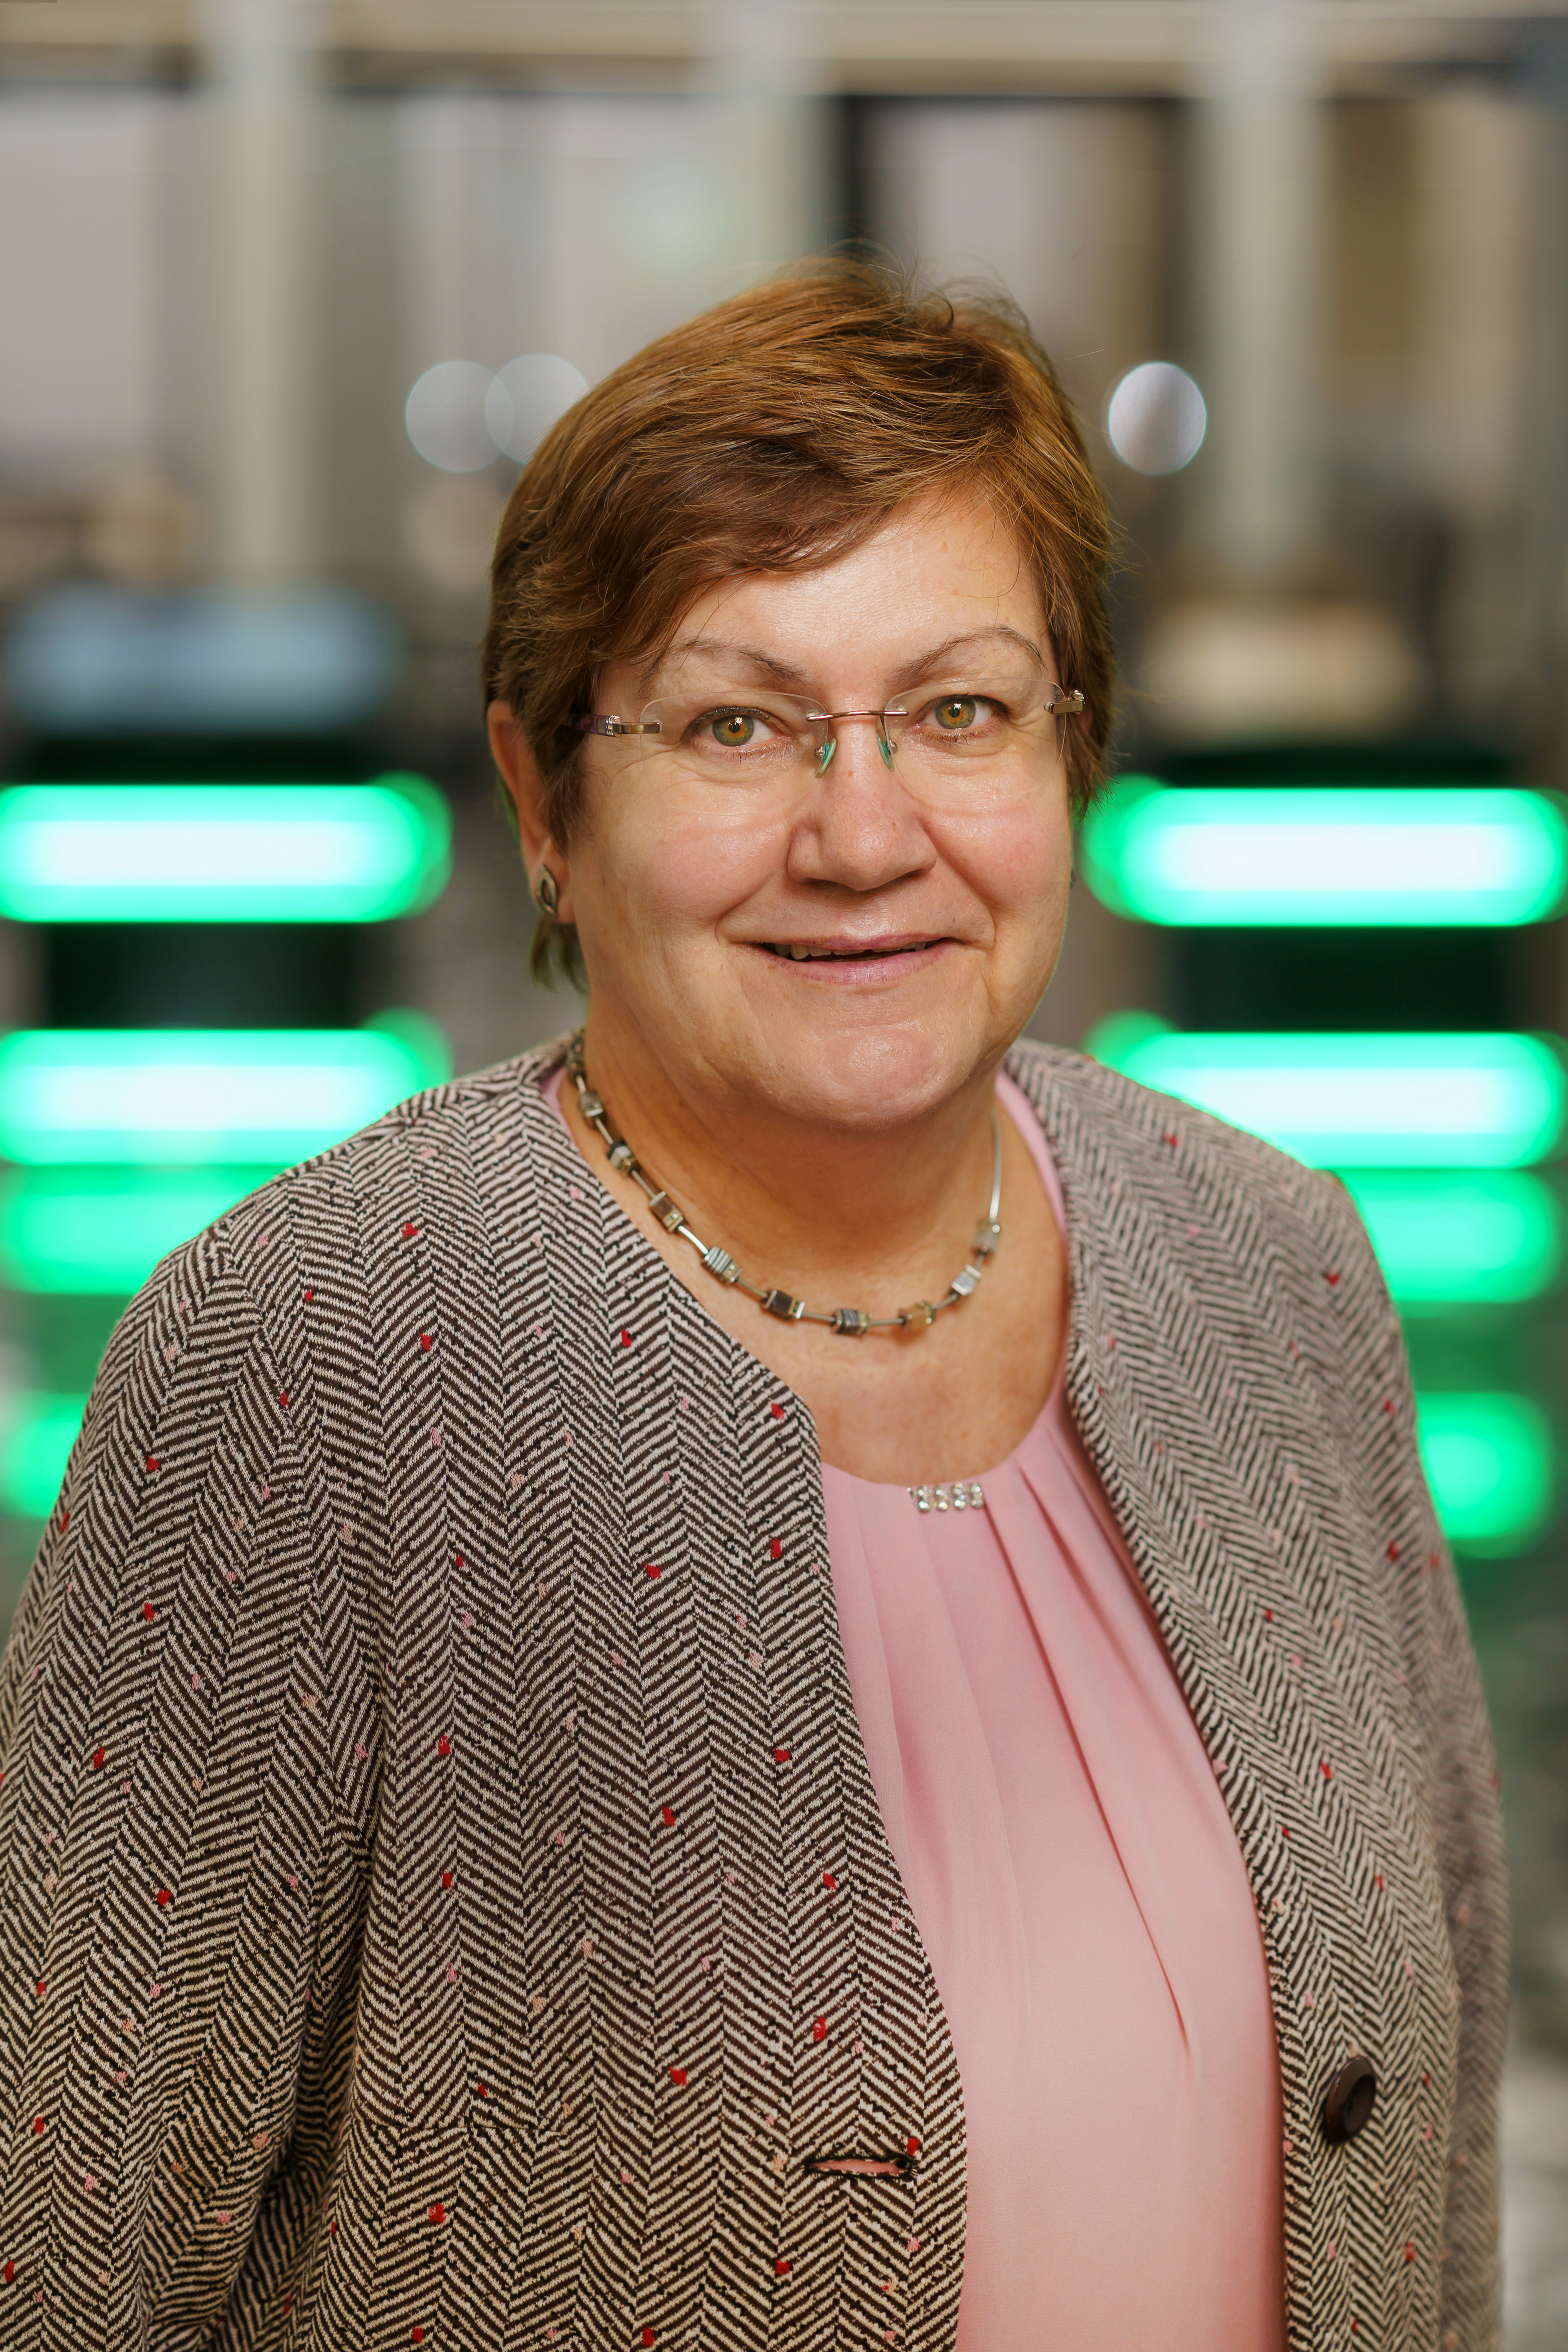 Portraitfoto: Karola Geiß-Netthöfel ist RVR-Regionaldirektorin und Bereichsleiterin Strategische Entwicklung und Kommunikation.